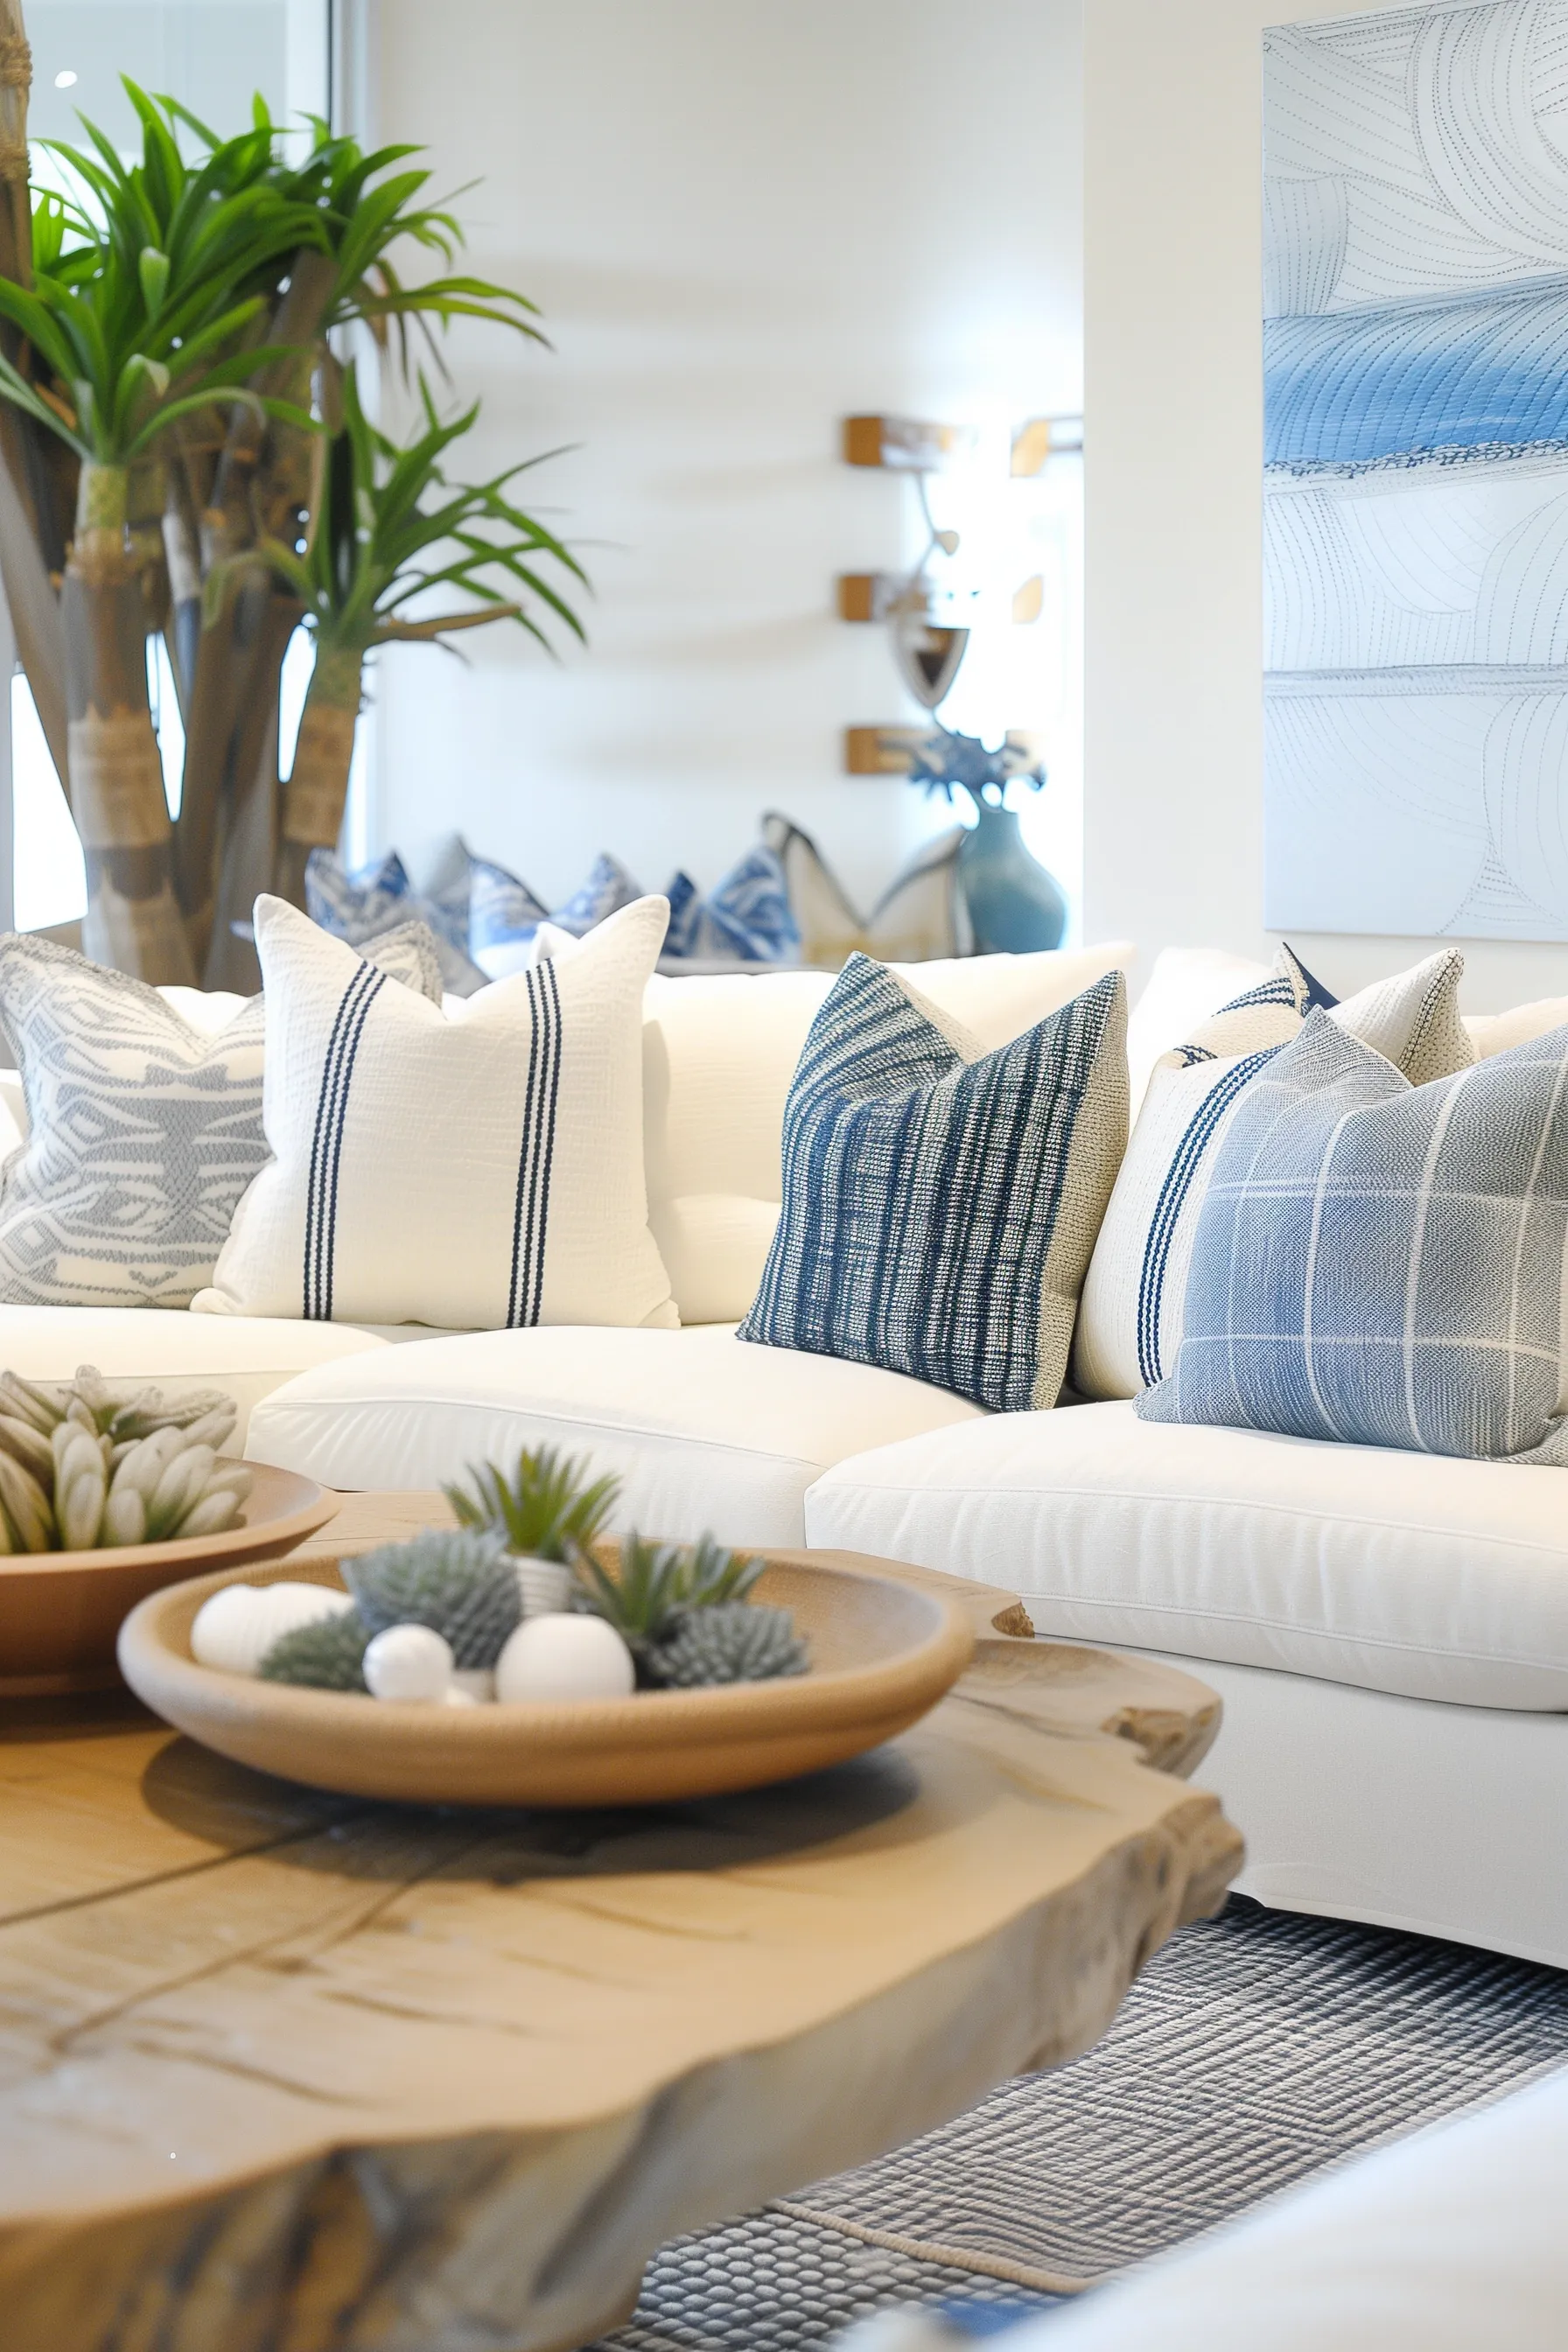 coastal living room ideas